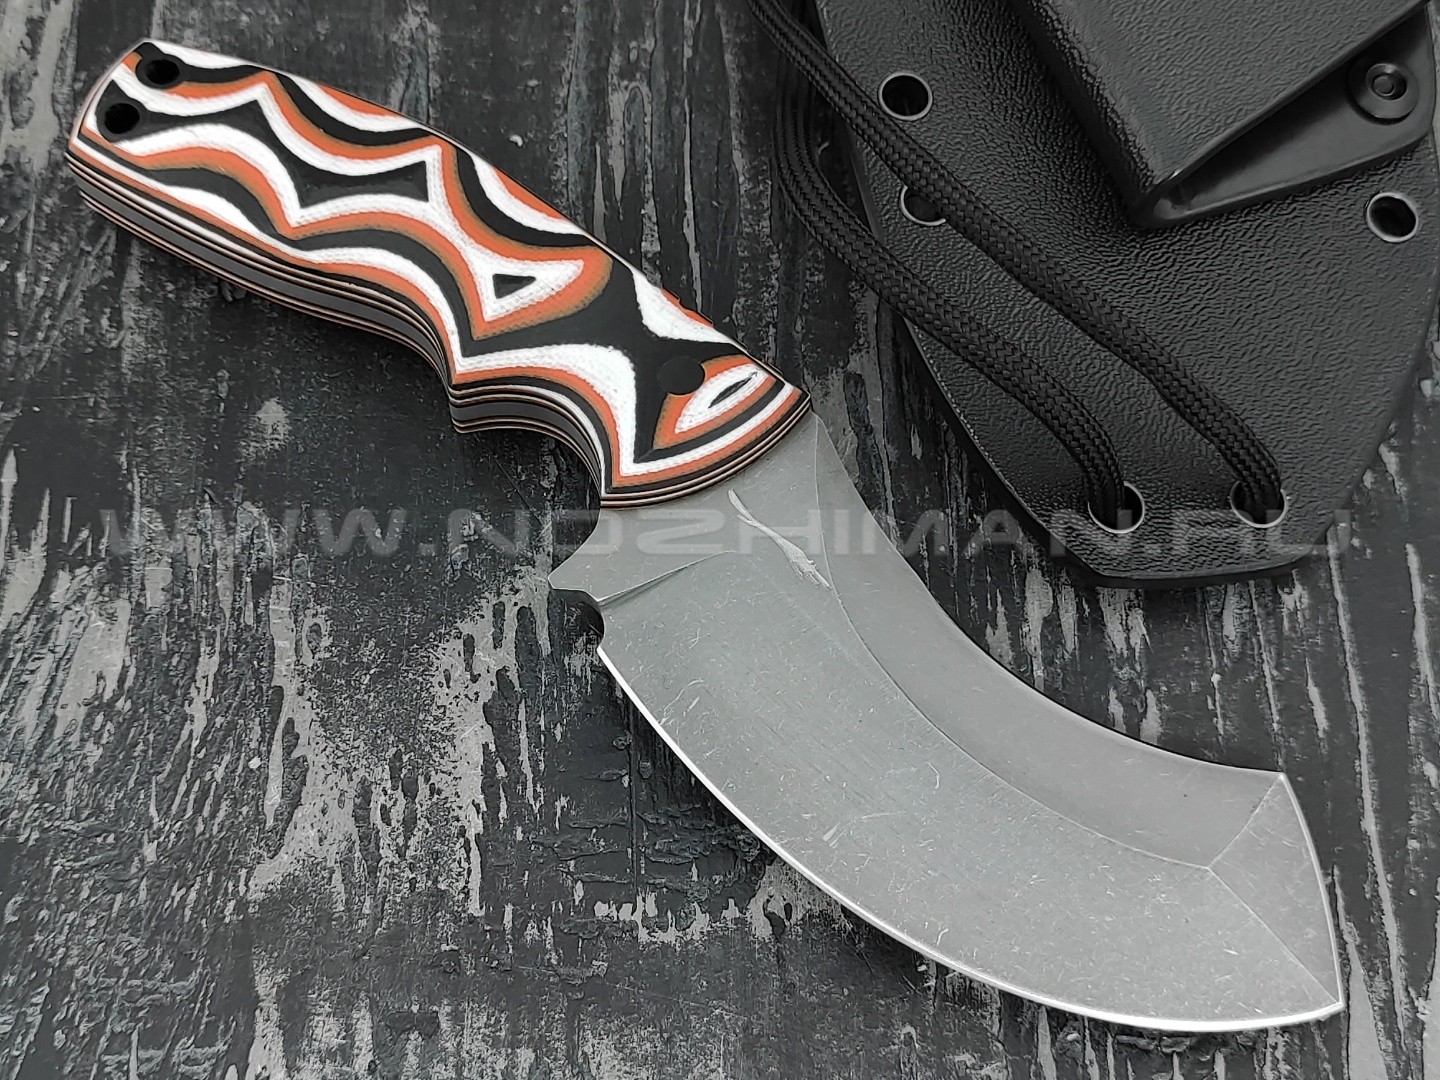 Волчий Век нож "Кондрат 9.5" сталь Niolox WA, рукоять G10, карбоновые пины